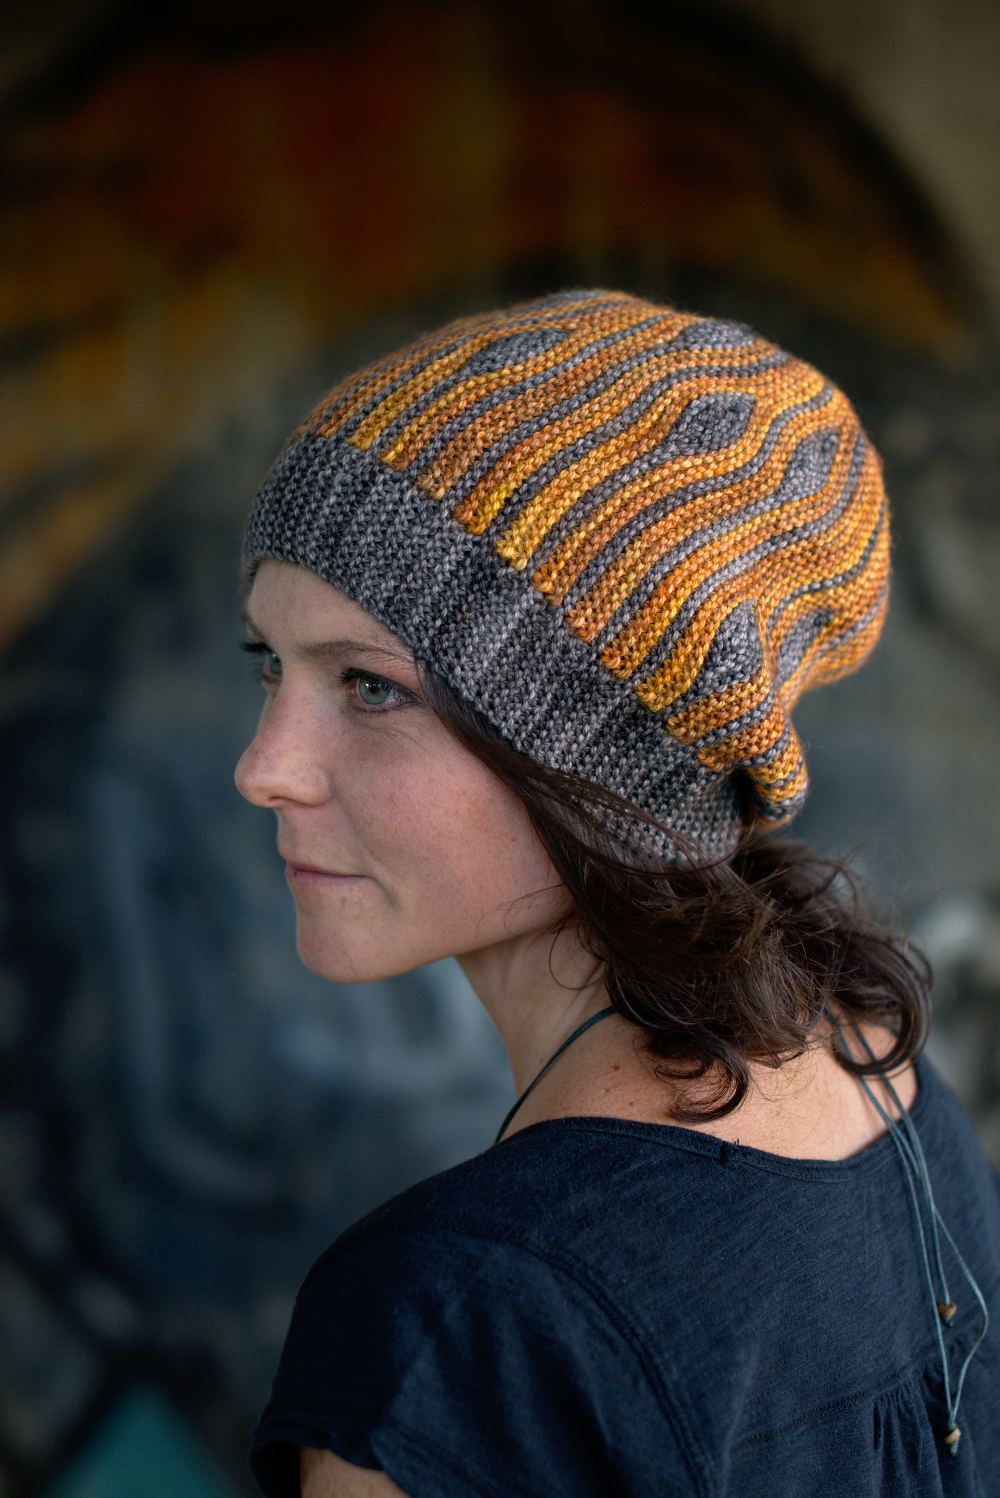 Korra sideways knit short row colourwork hand knitted Hat pattern